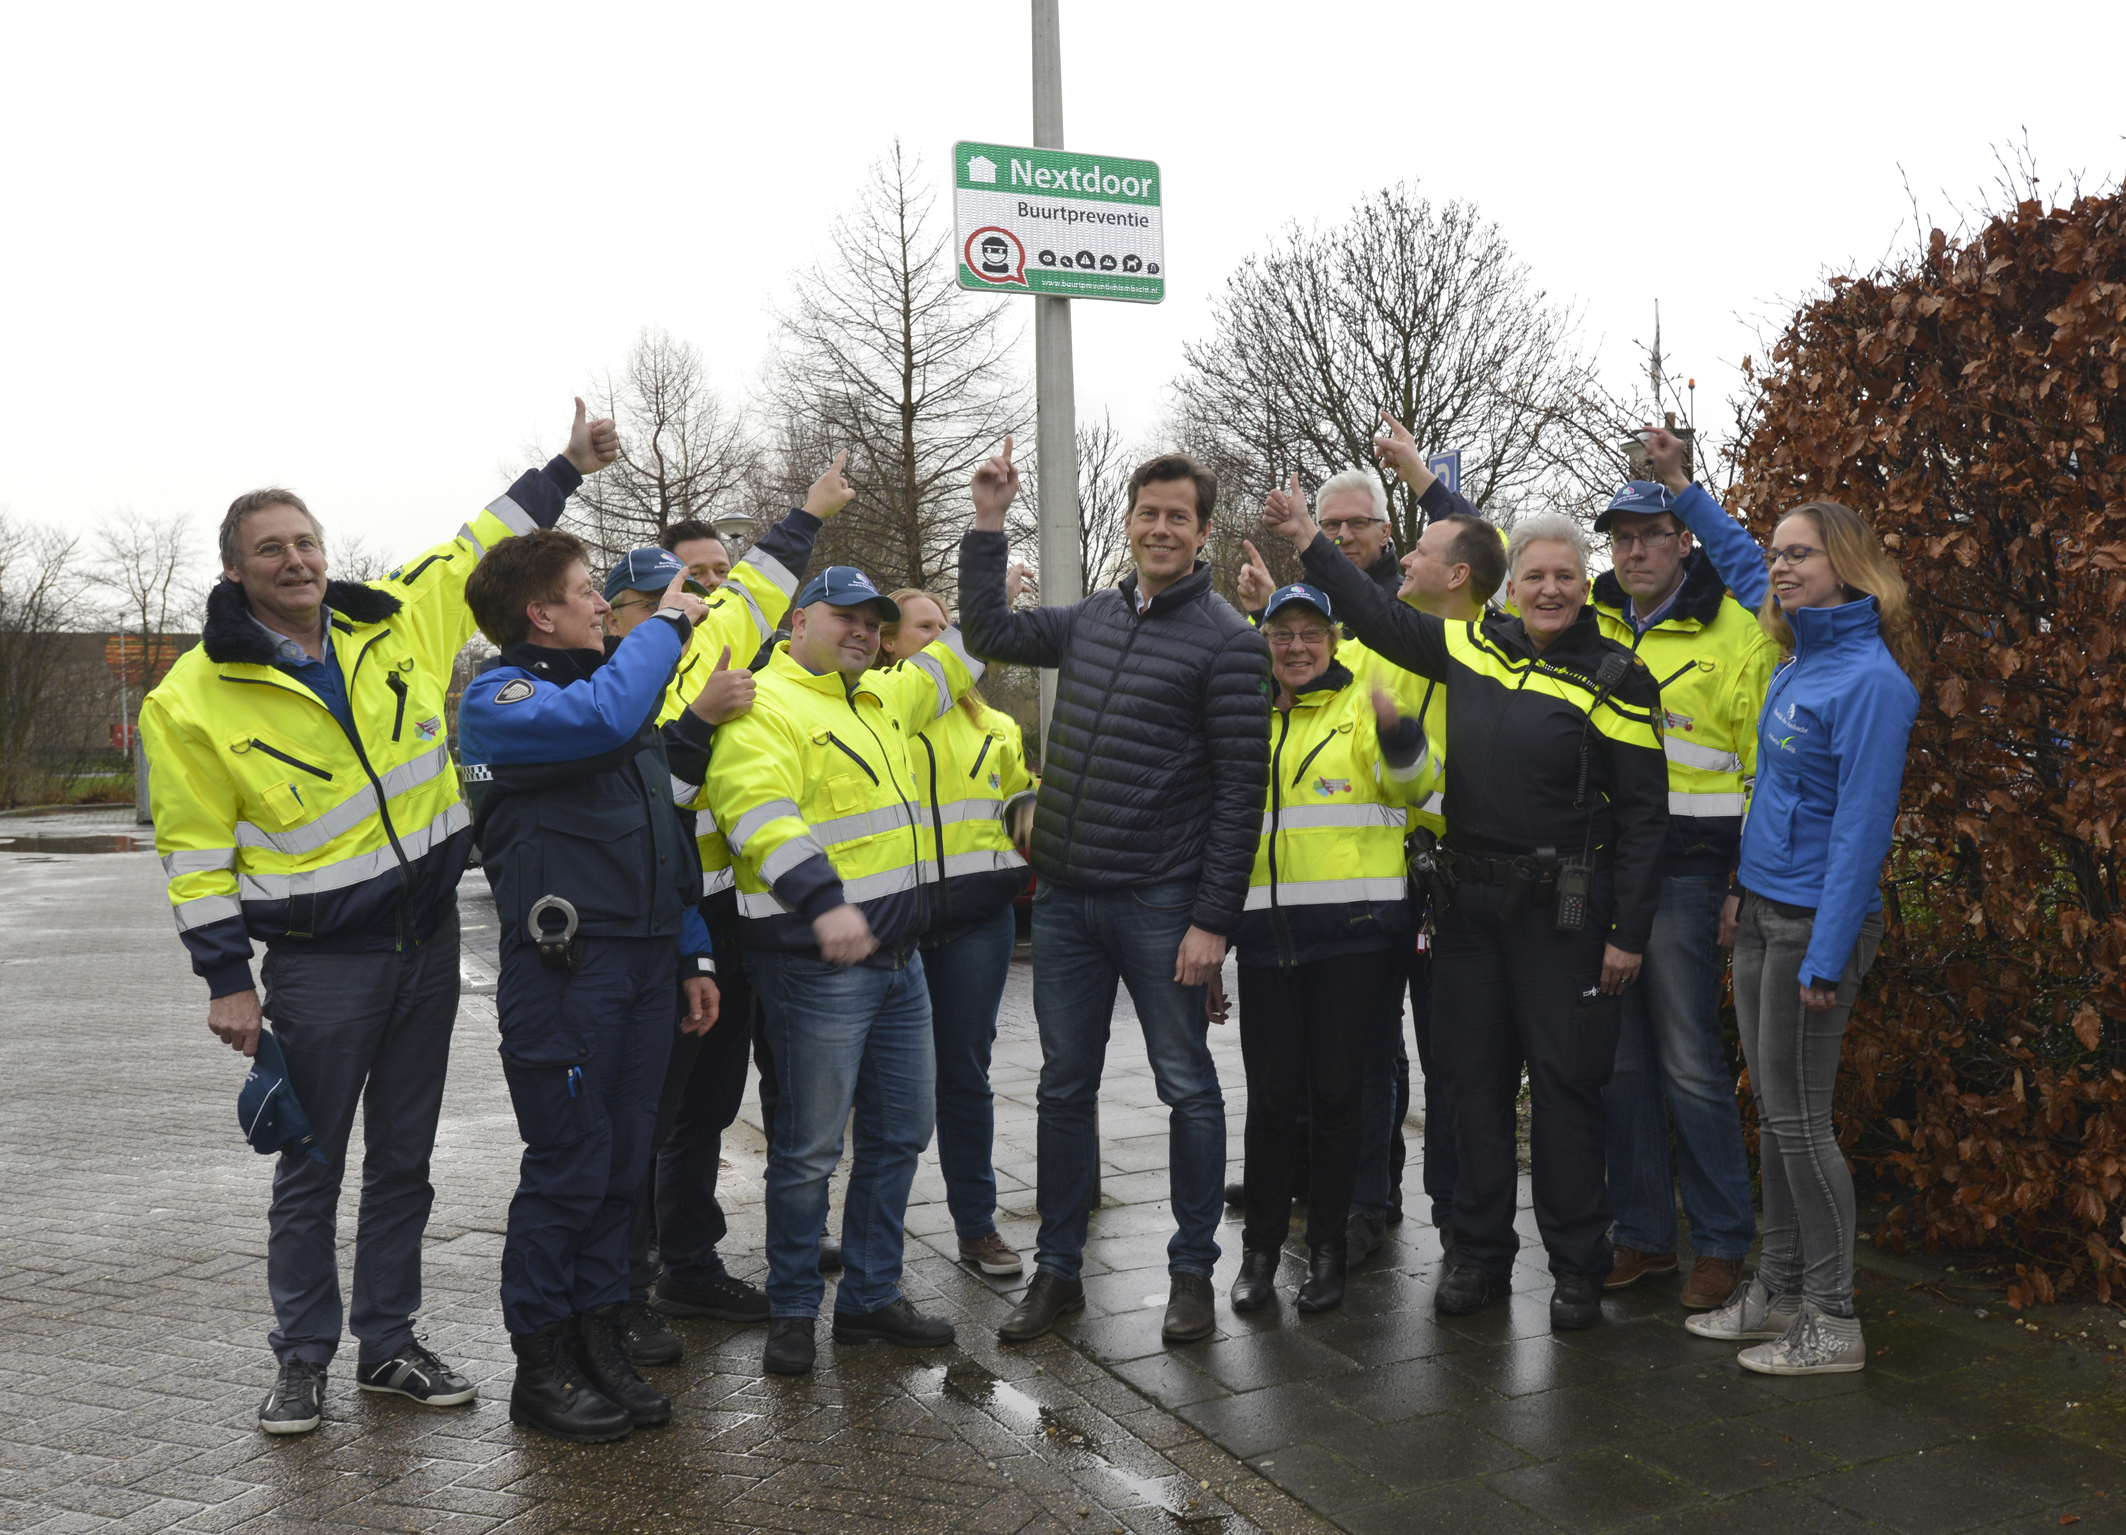 Politie en buurtpreventie onthullen het eerste buurtpreventiebord van Nextdoor.